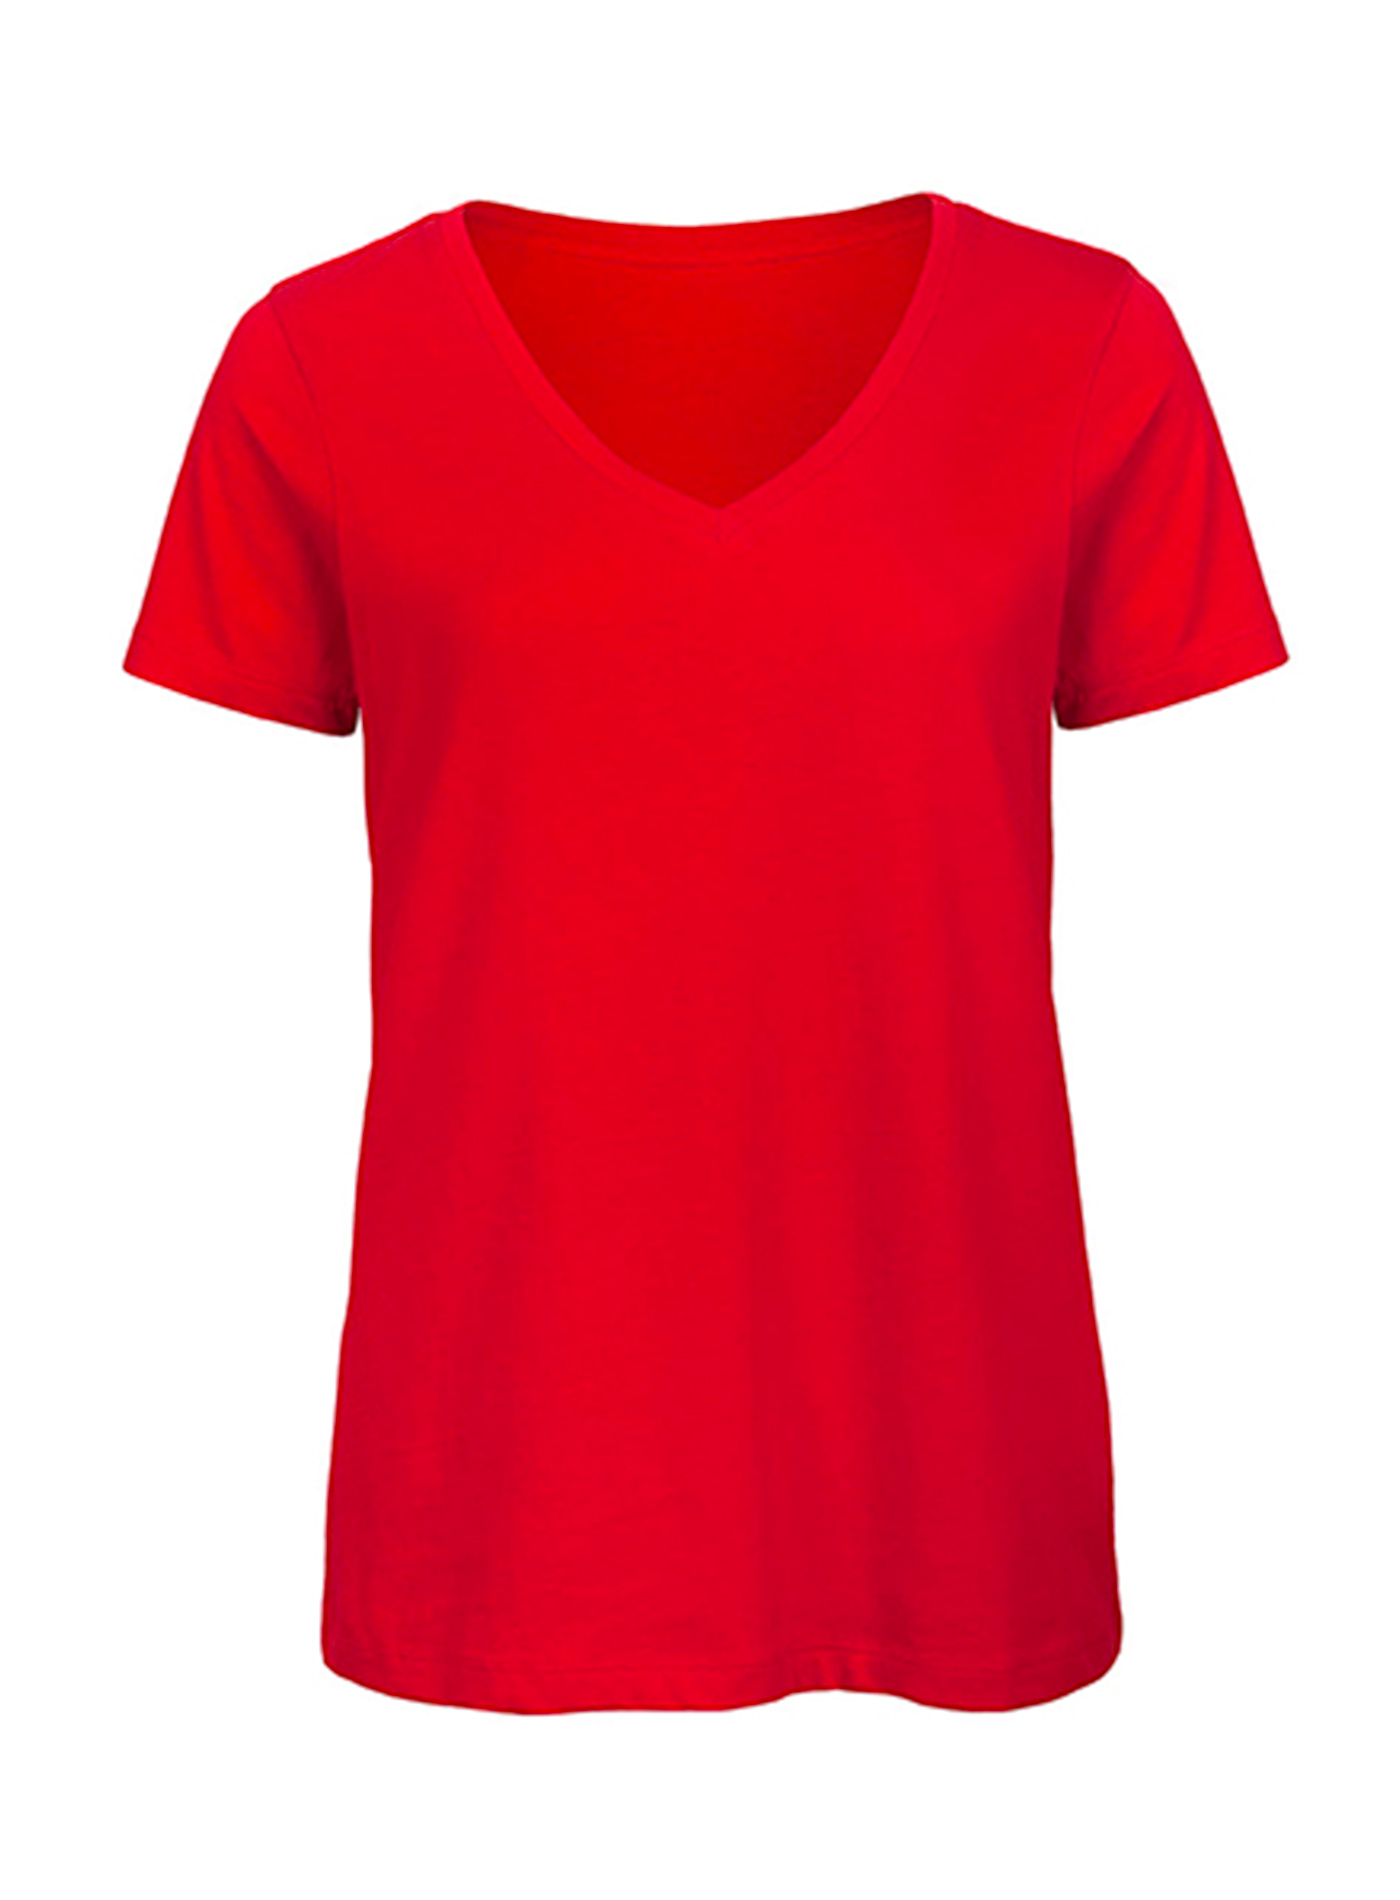 Dámské tričko s výstřihem do V B&C Collection Inspire - Červená L